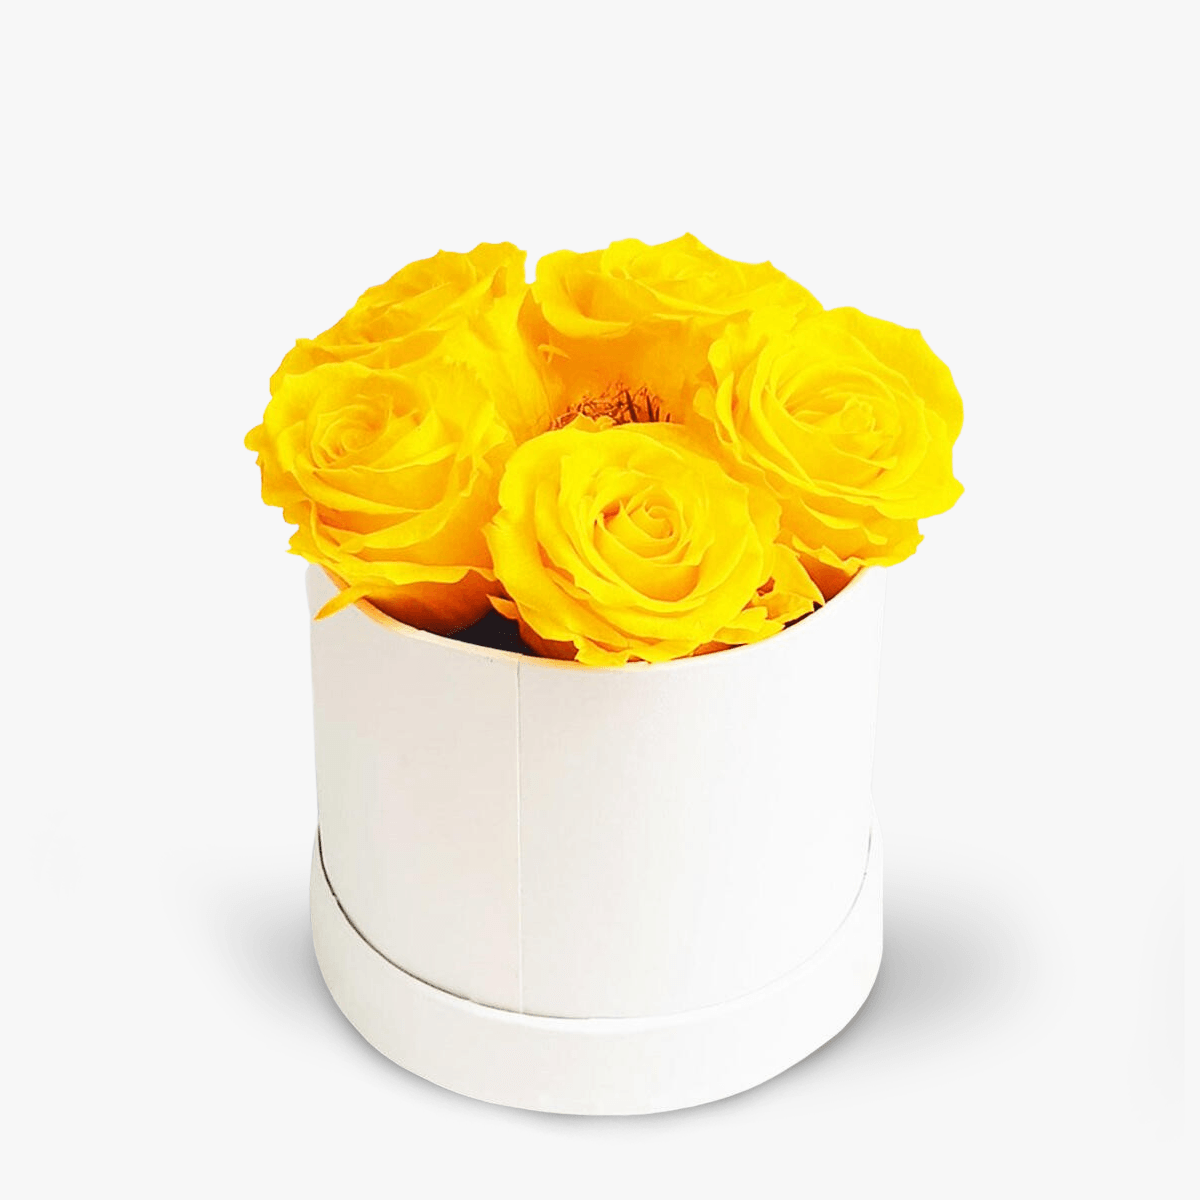 Cutie cu 9 trandafiri lavanda, criogenati – Standard criogenati